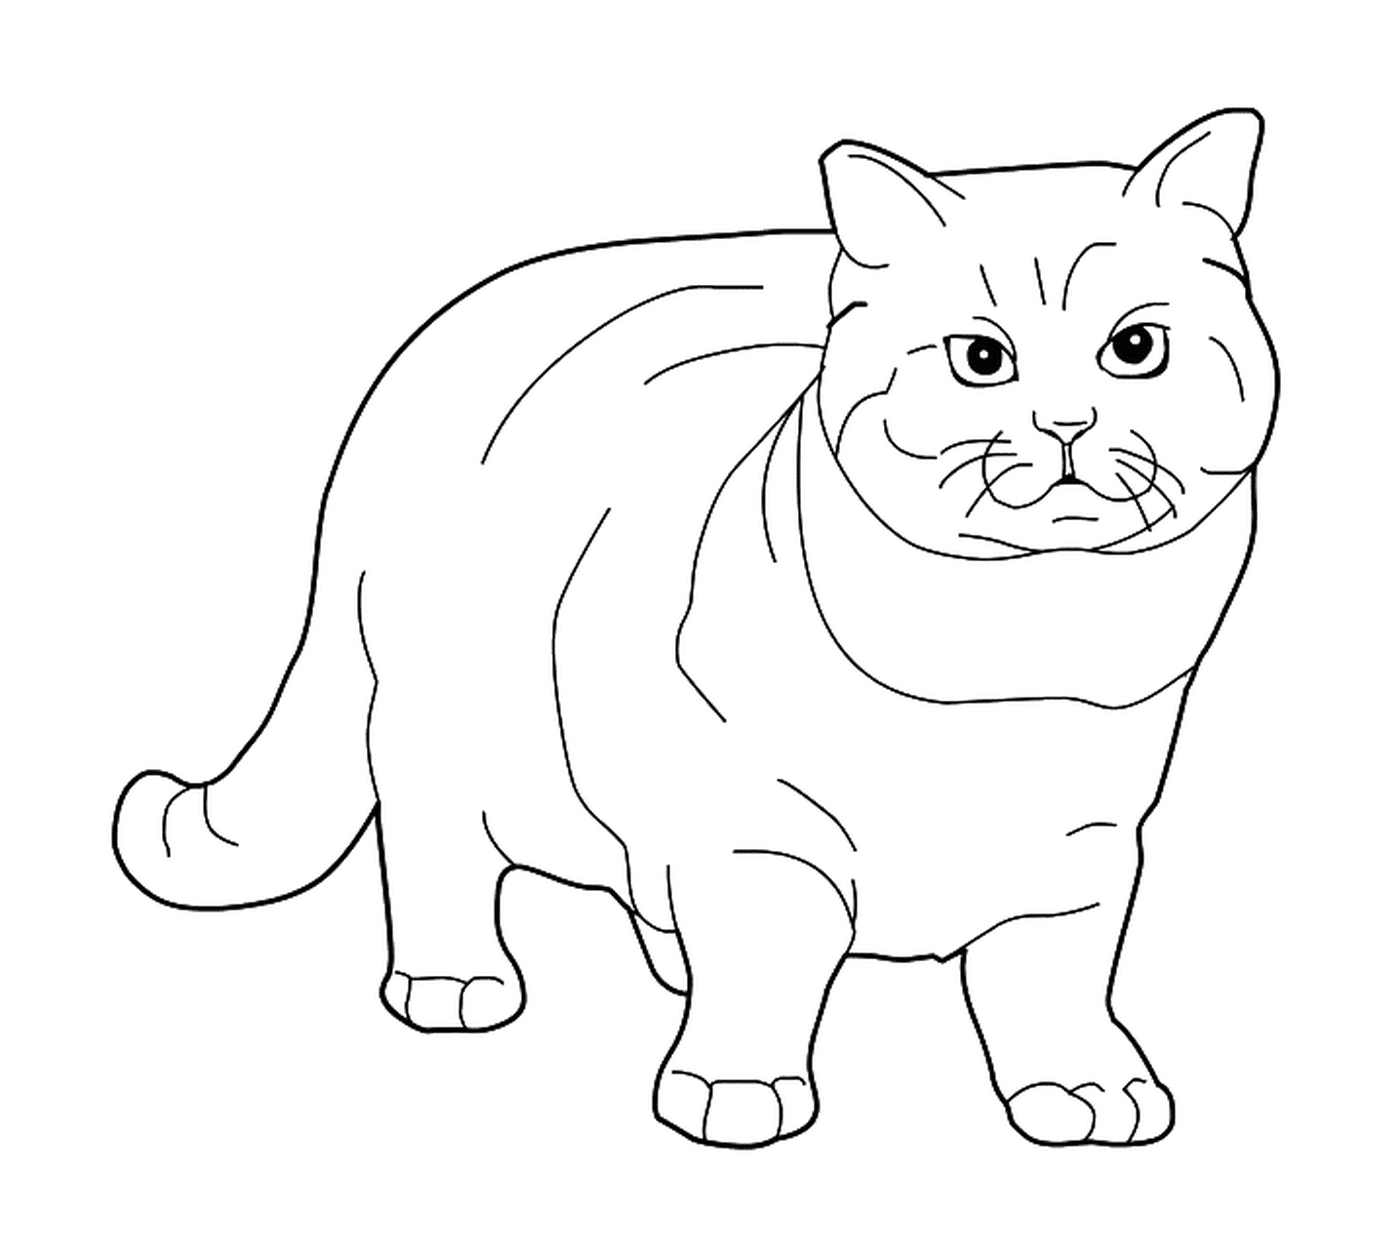  Ein britischer Kurzhaar, eine elegante Katze 